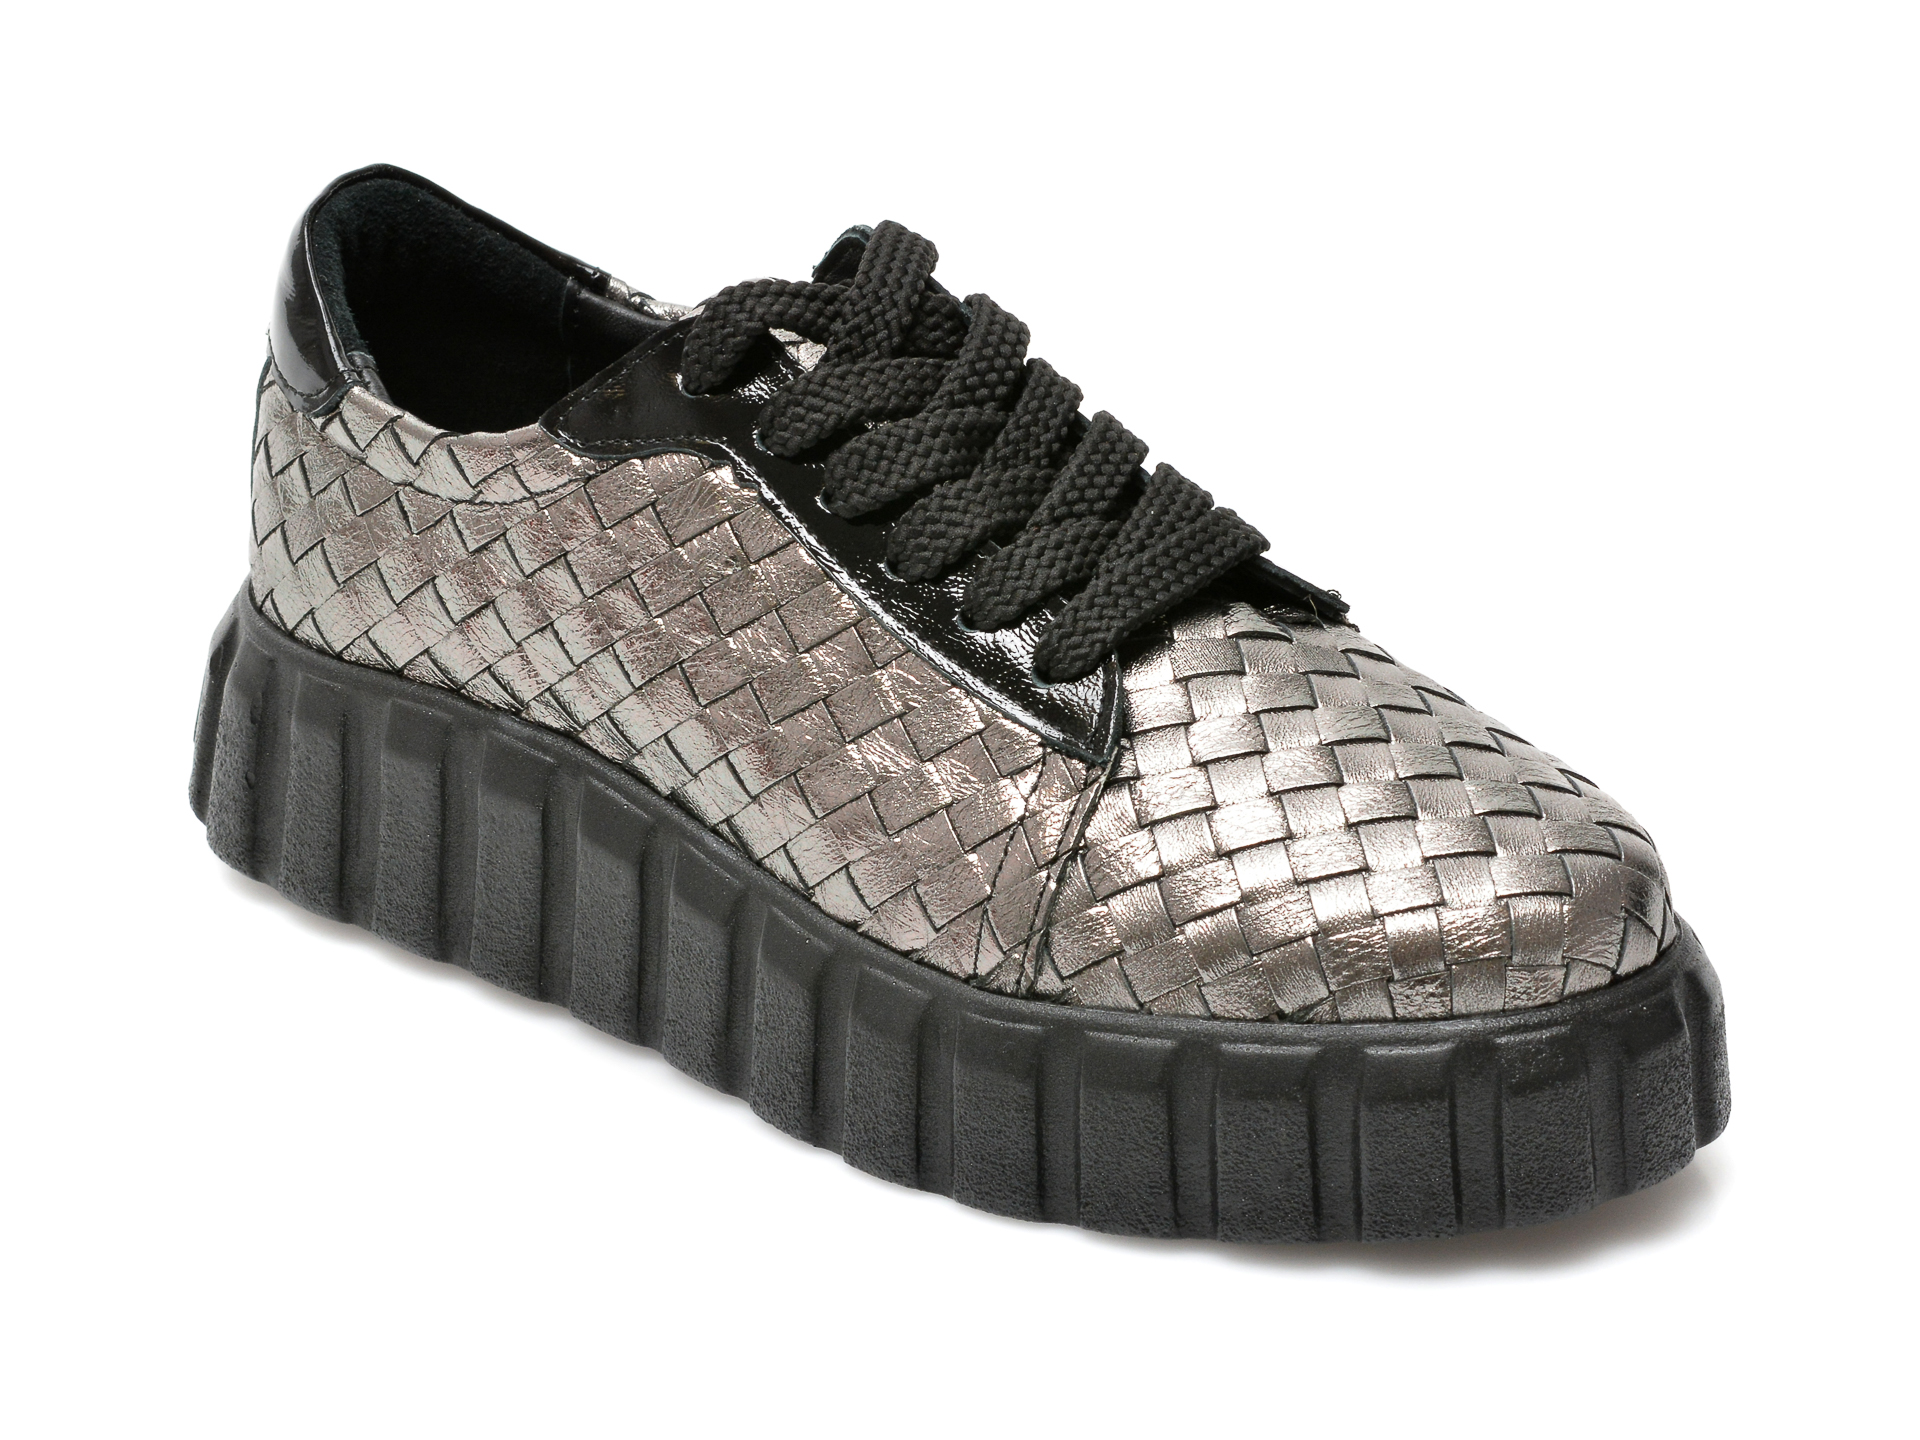 Pantofi EPICA argintii, 111Y211, din piele naturala Epica Epica